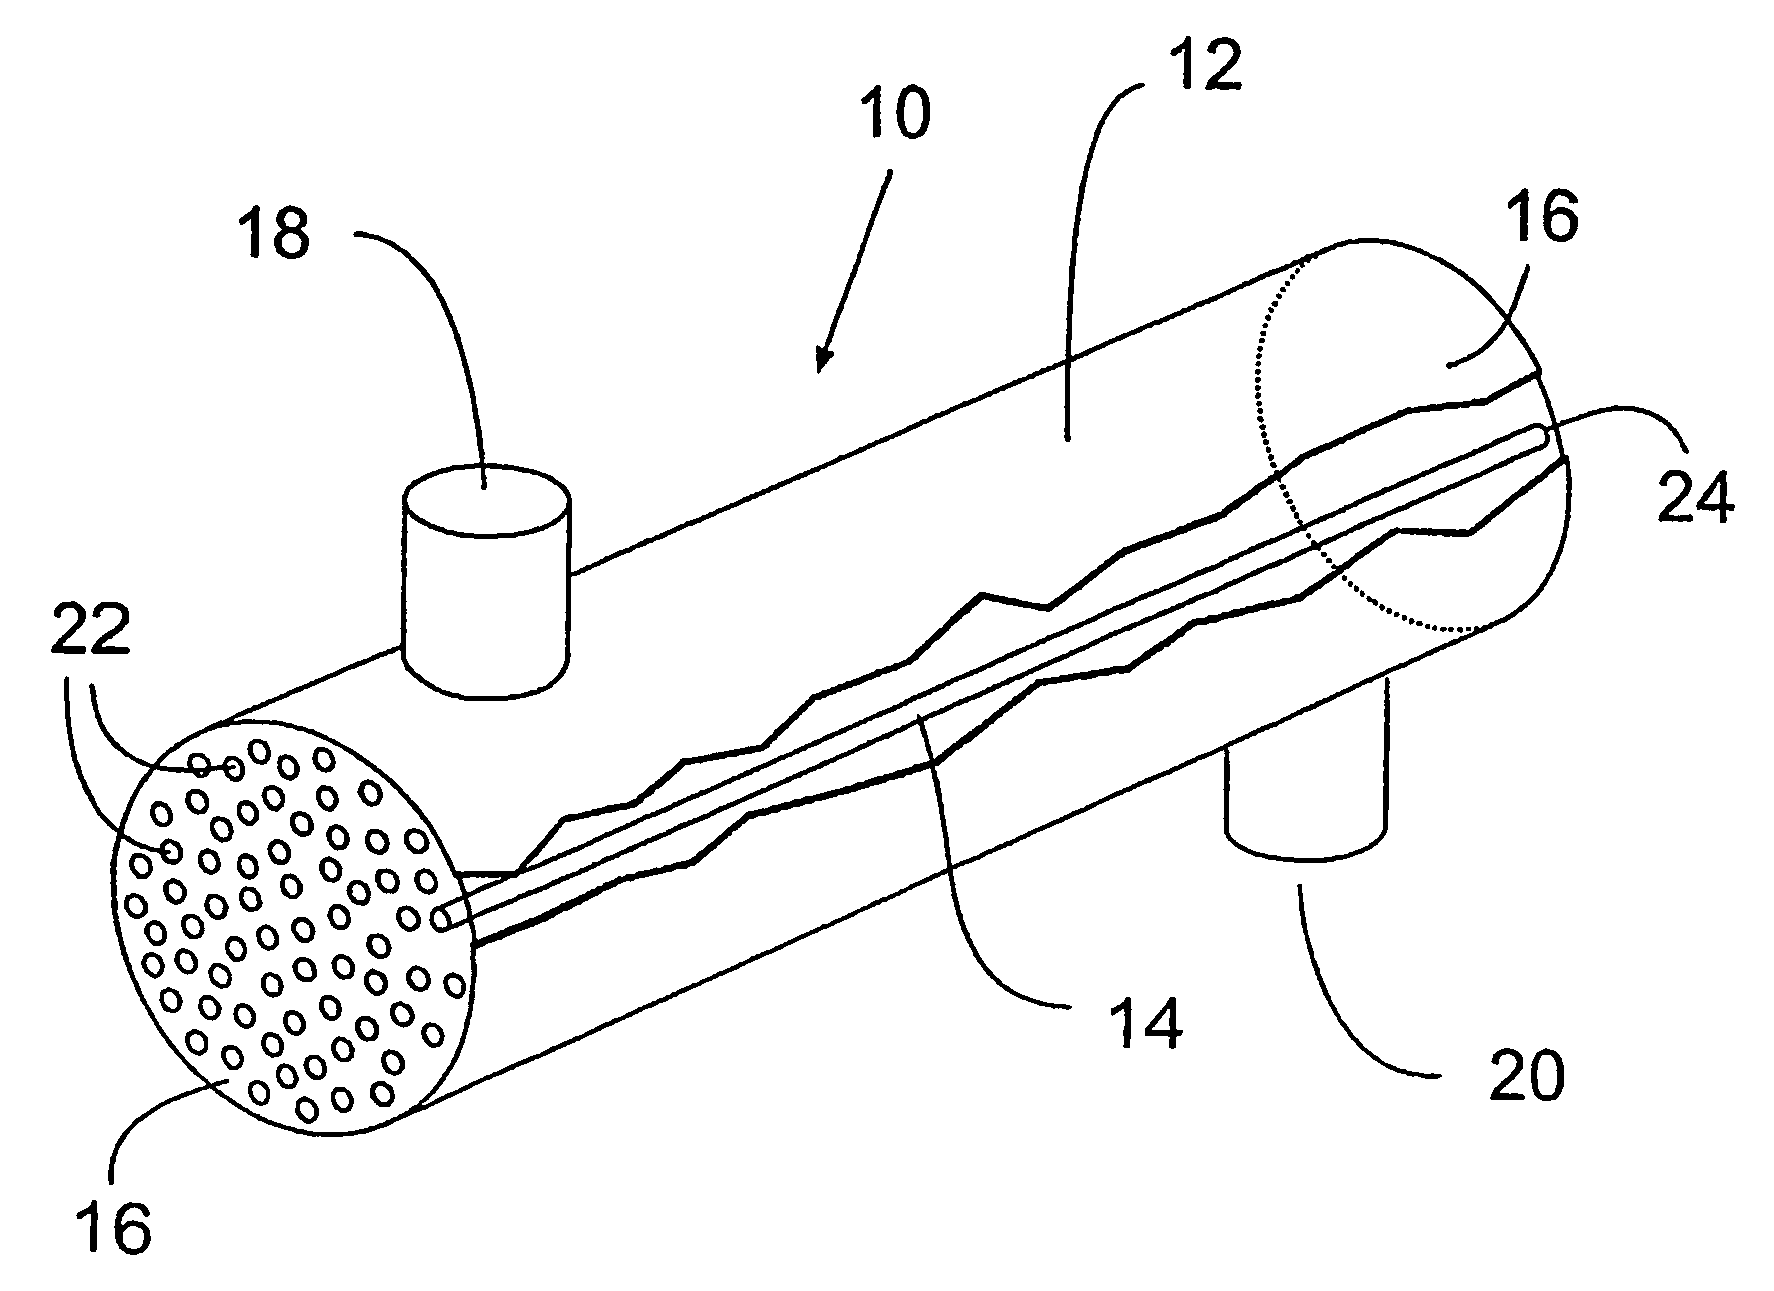 Hollow fiber membrane contact apparatus and process